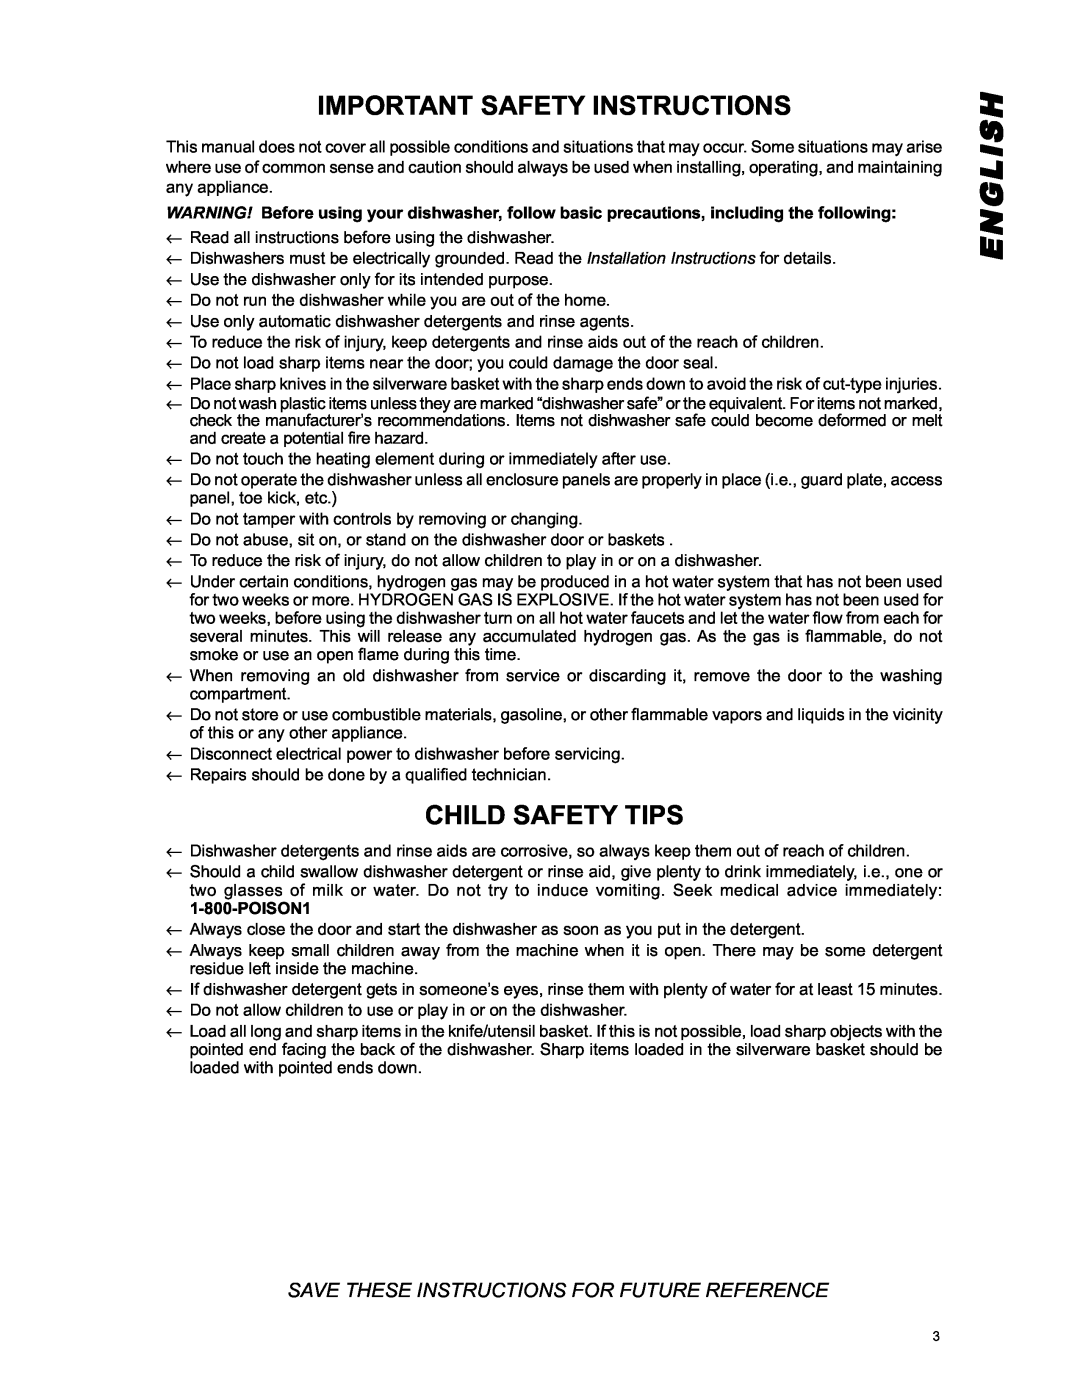 Eurotech Appliances EDW254E, EDW294E, EDW242C, EDW274E English, Important Safety Instructions, Child Safety Tips, POISON1 